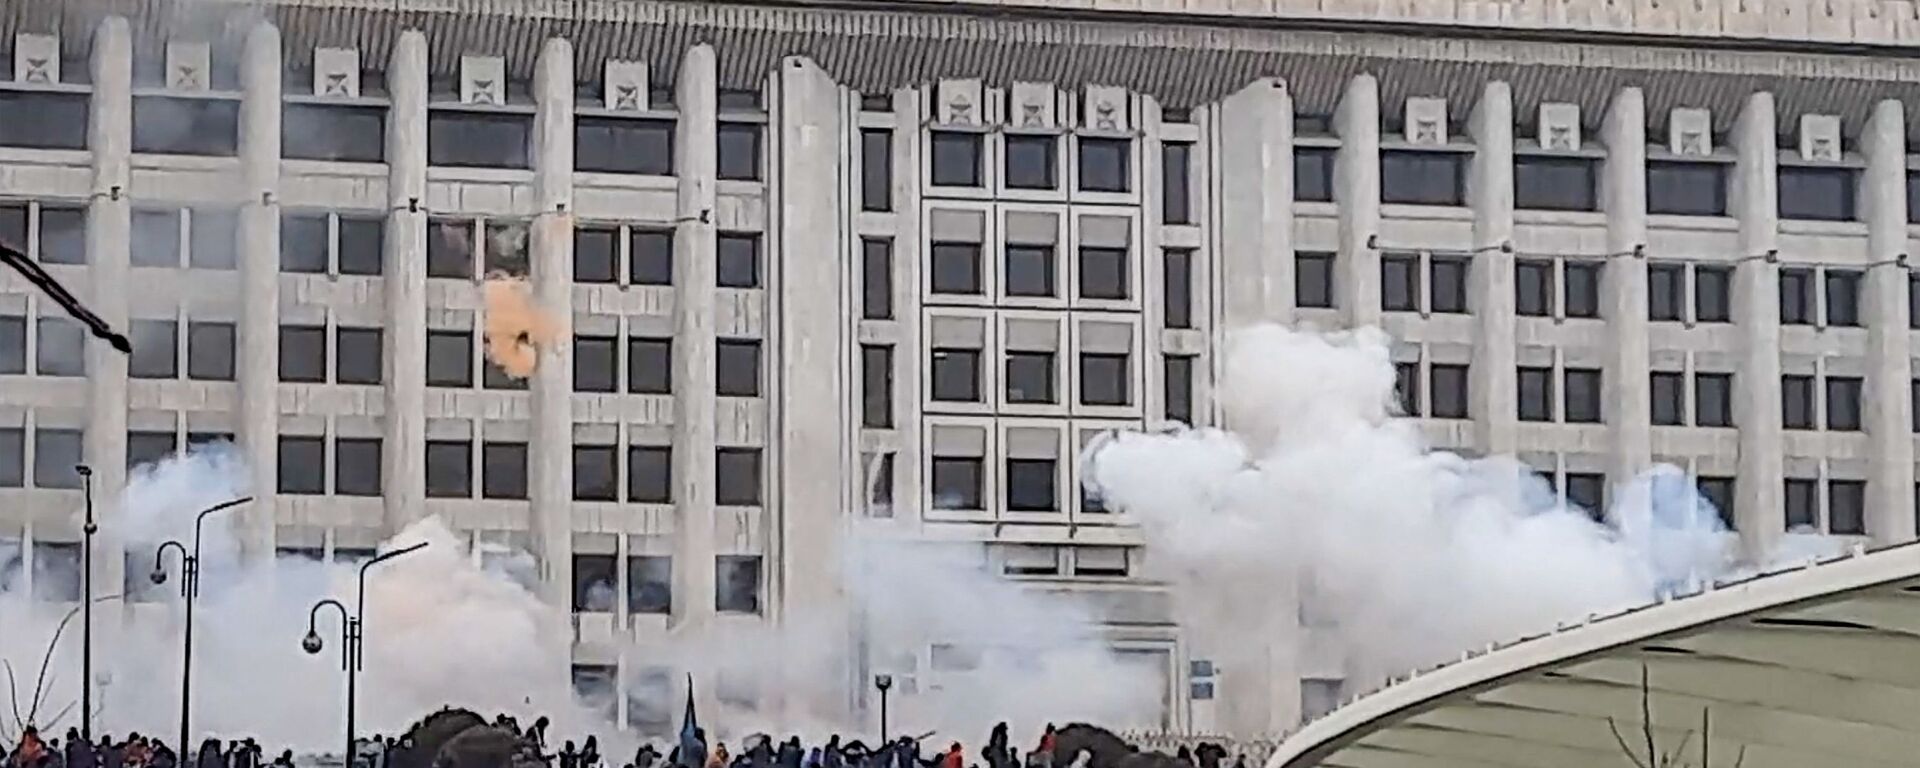 Manifestantes perto de prédio administrativo durante protestos contra a subida do preço de gás de petróleo liquefeito pelas autoridades cazaques, em Almaty, Cazaquistão, 5 de janeiro de 2022 - Sputnik Brasil, 1920, 10.01.2022